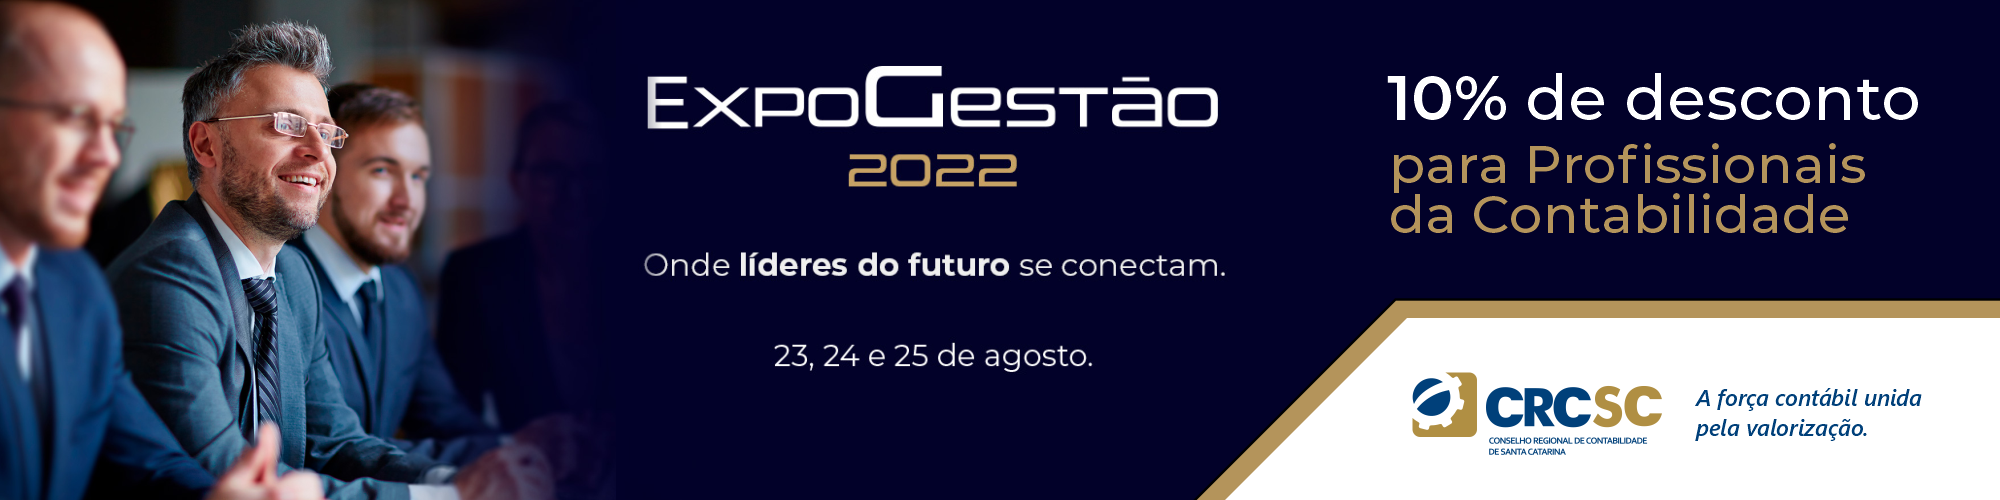 Expogestão 2022